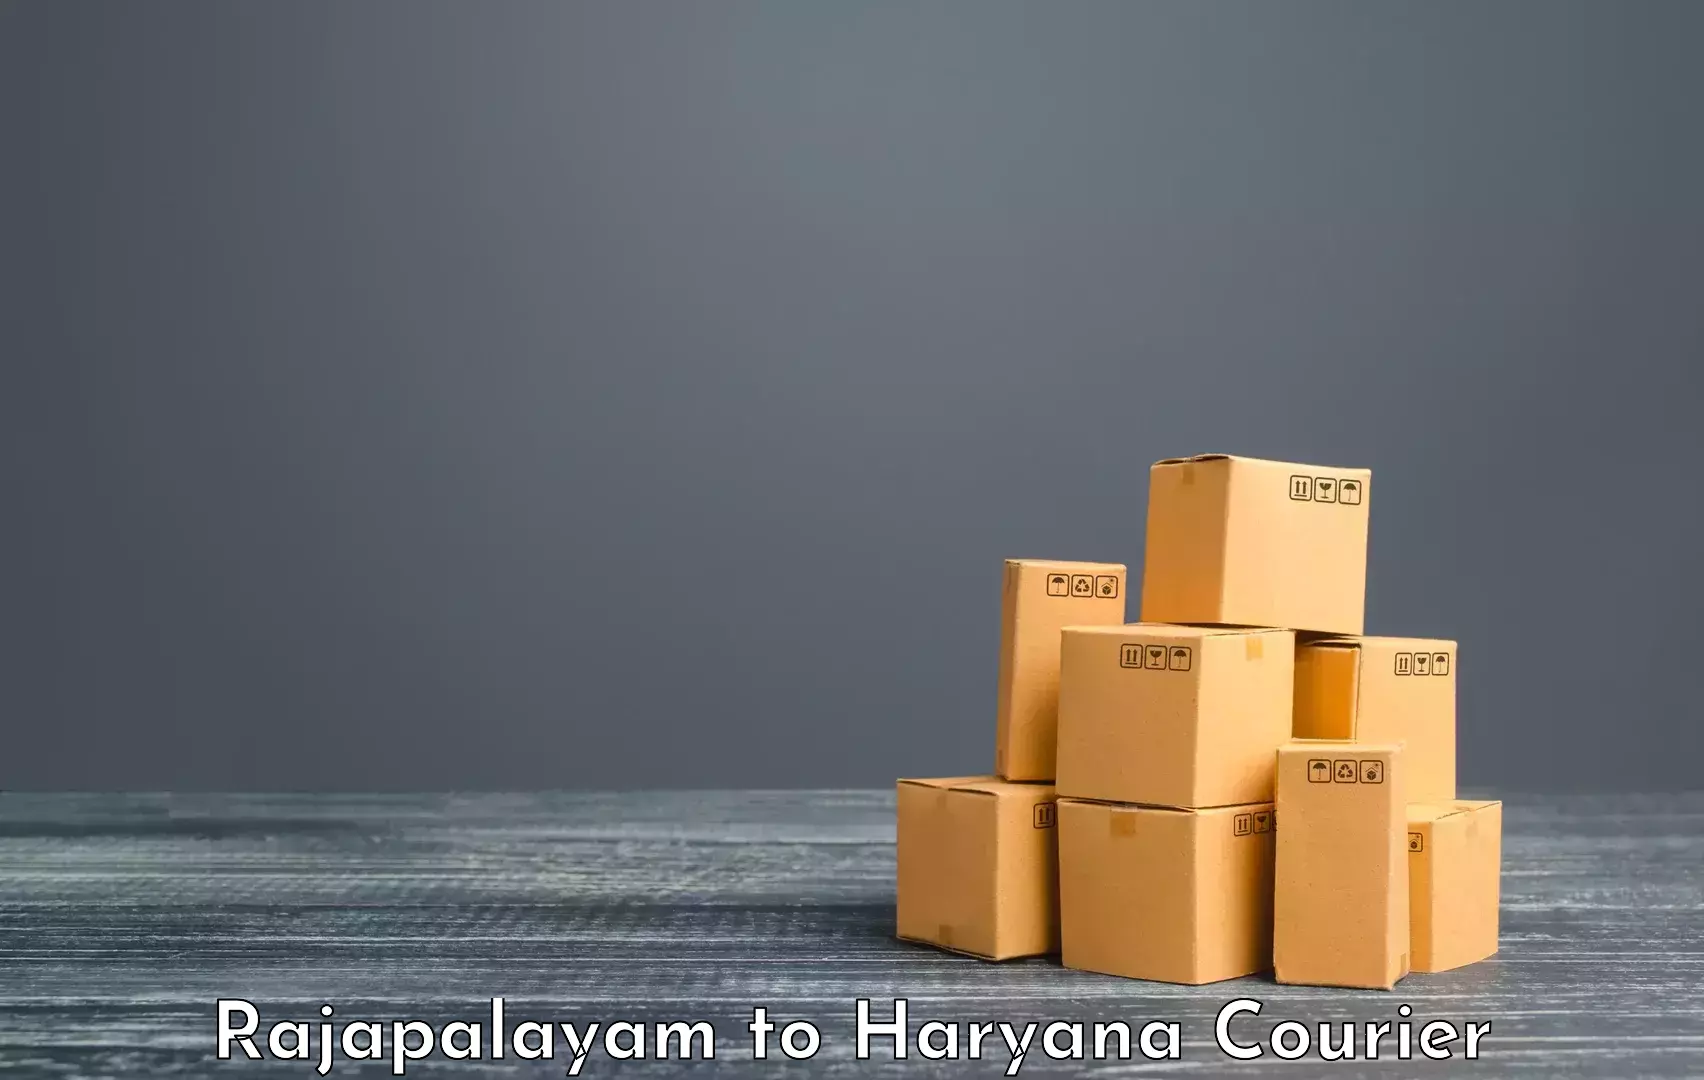 Digital baggage courier Rajapalayam to Chaudhary Charan Singh Haryana Agricultural University Hisar